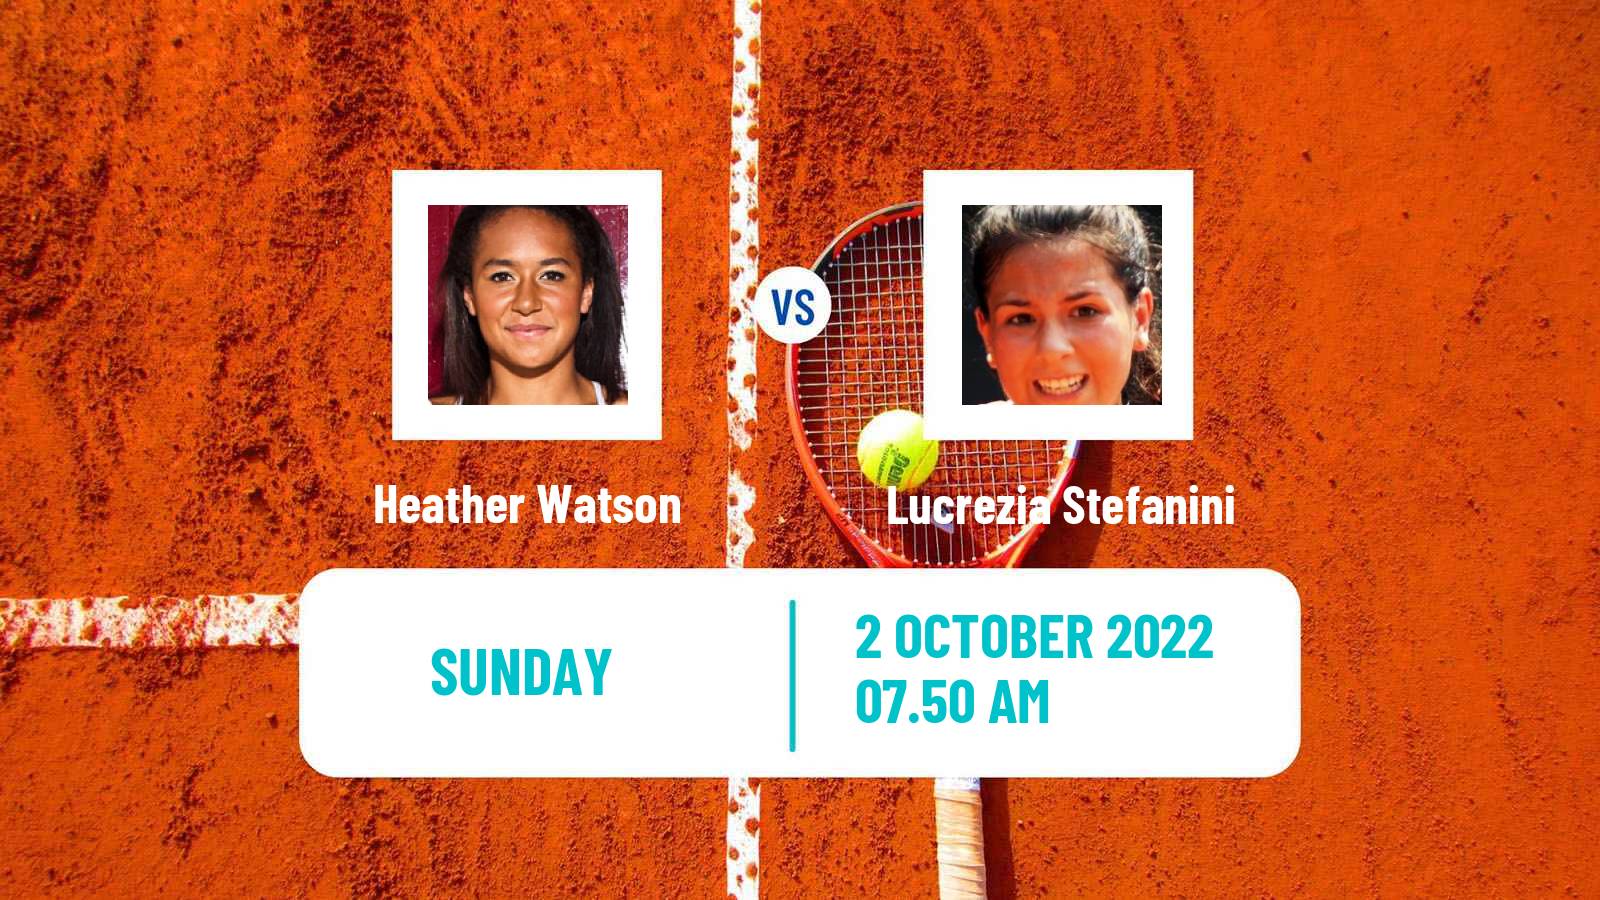 Tennis WTA Monastir Heather Watson - Lucrezia Stefanini